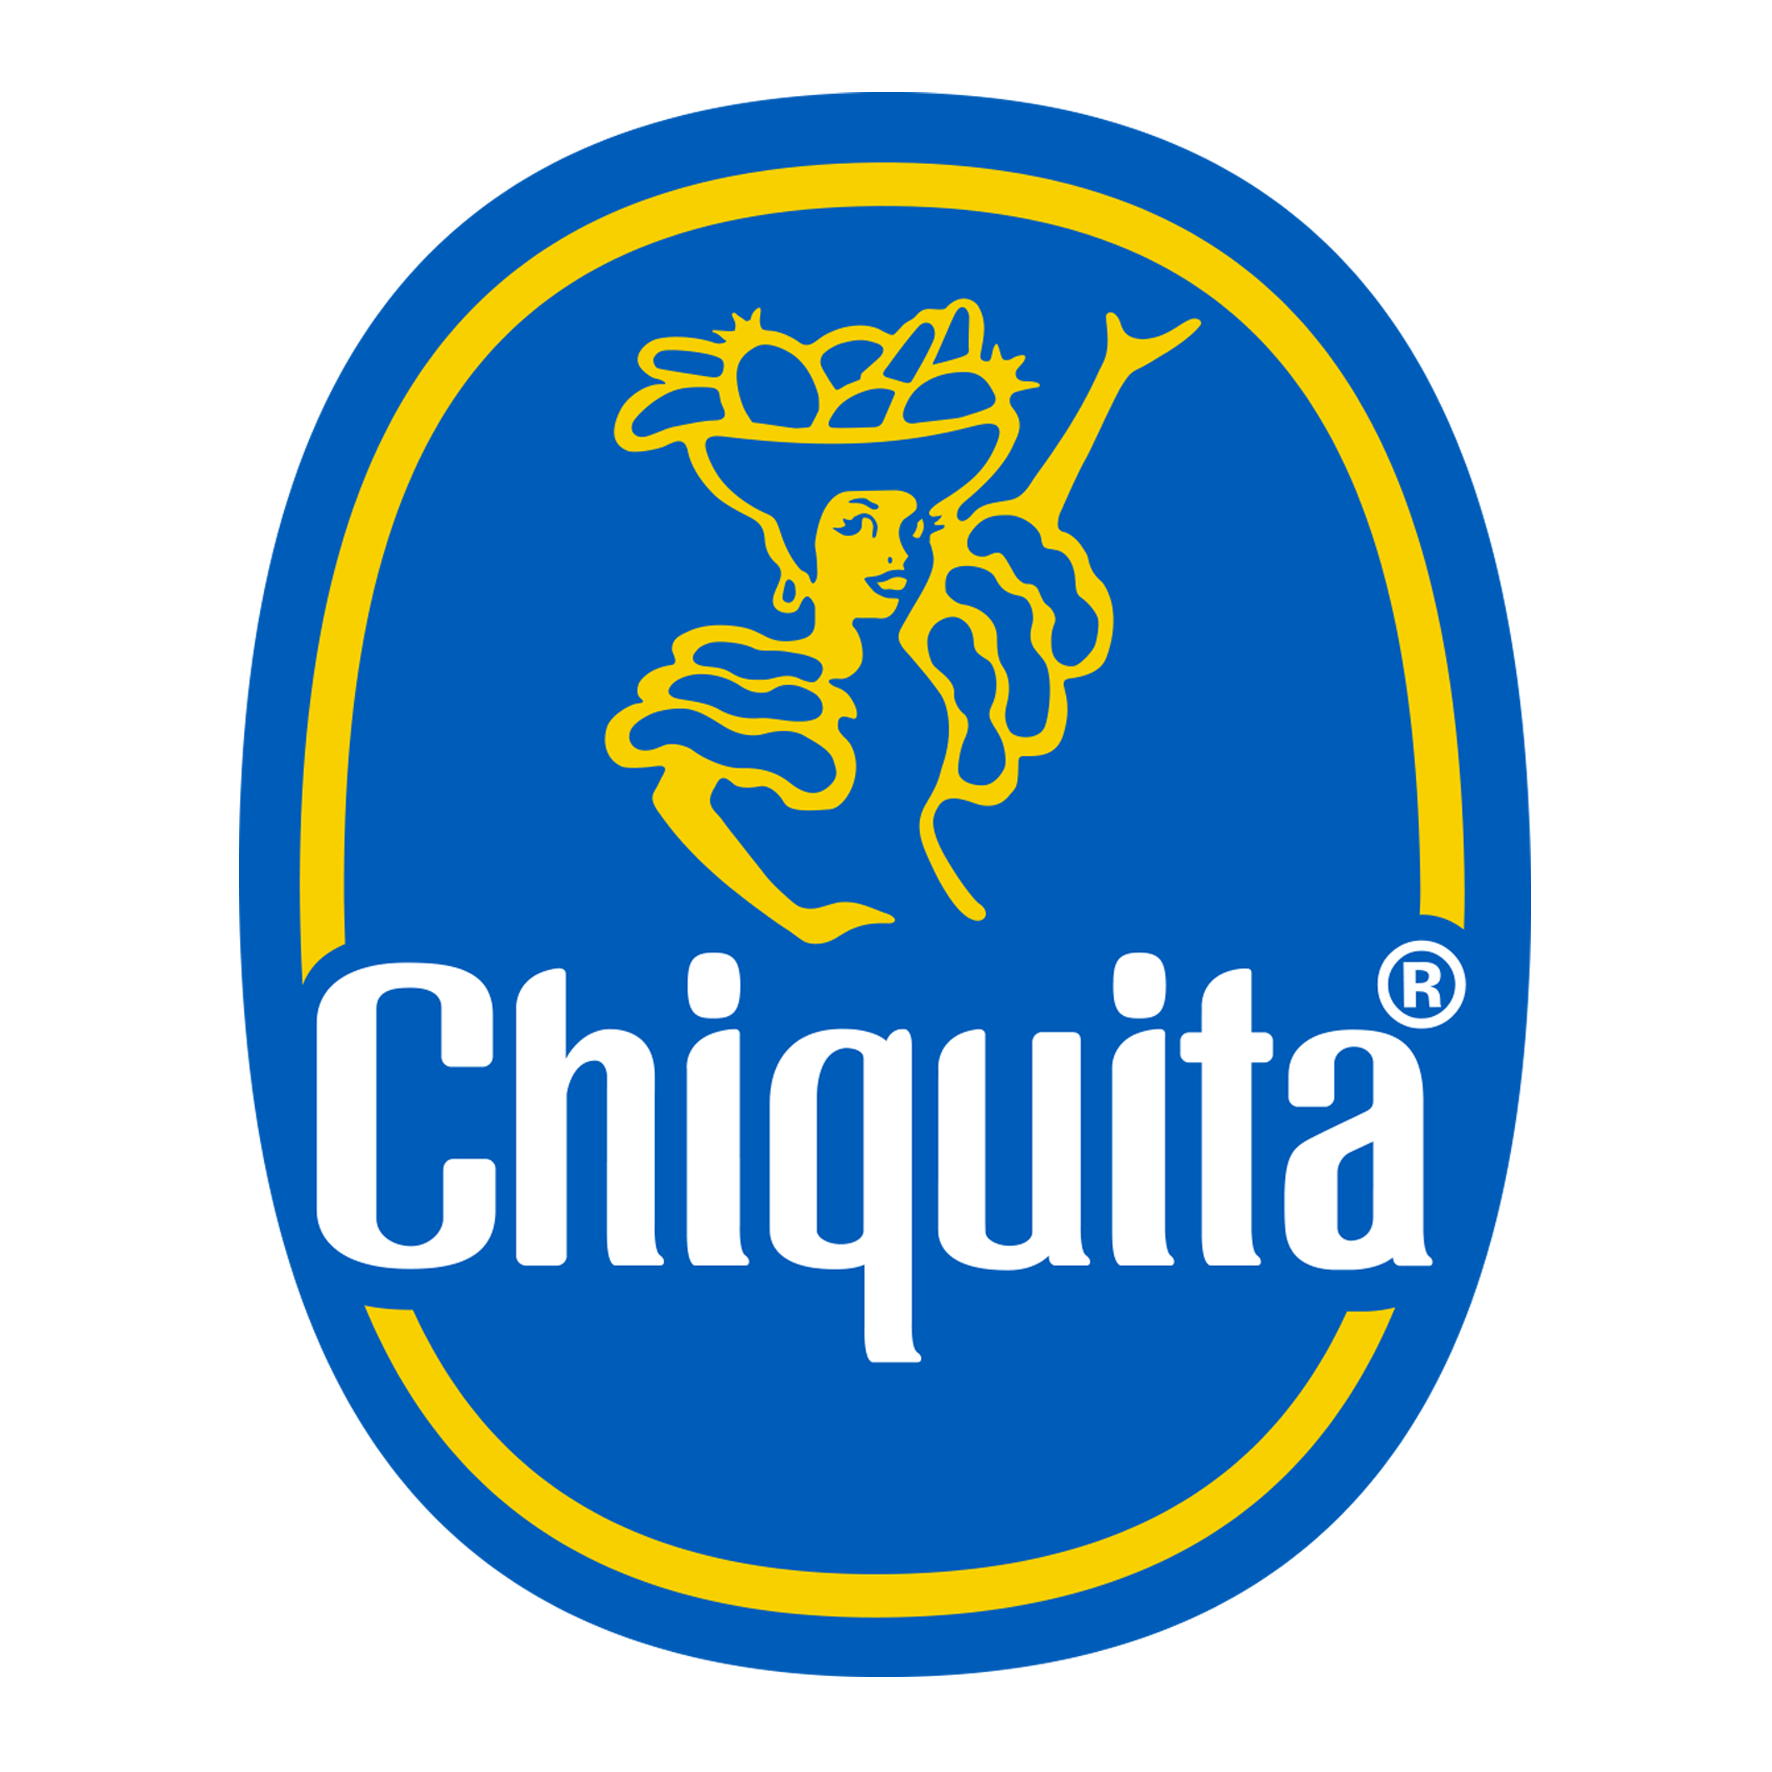 Chiquita- LOGO